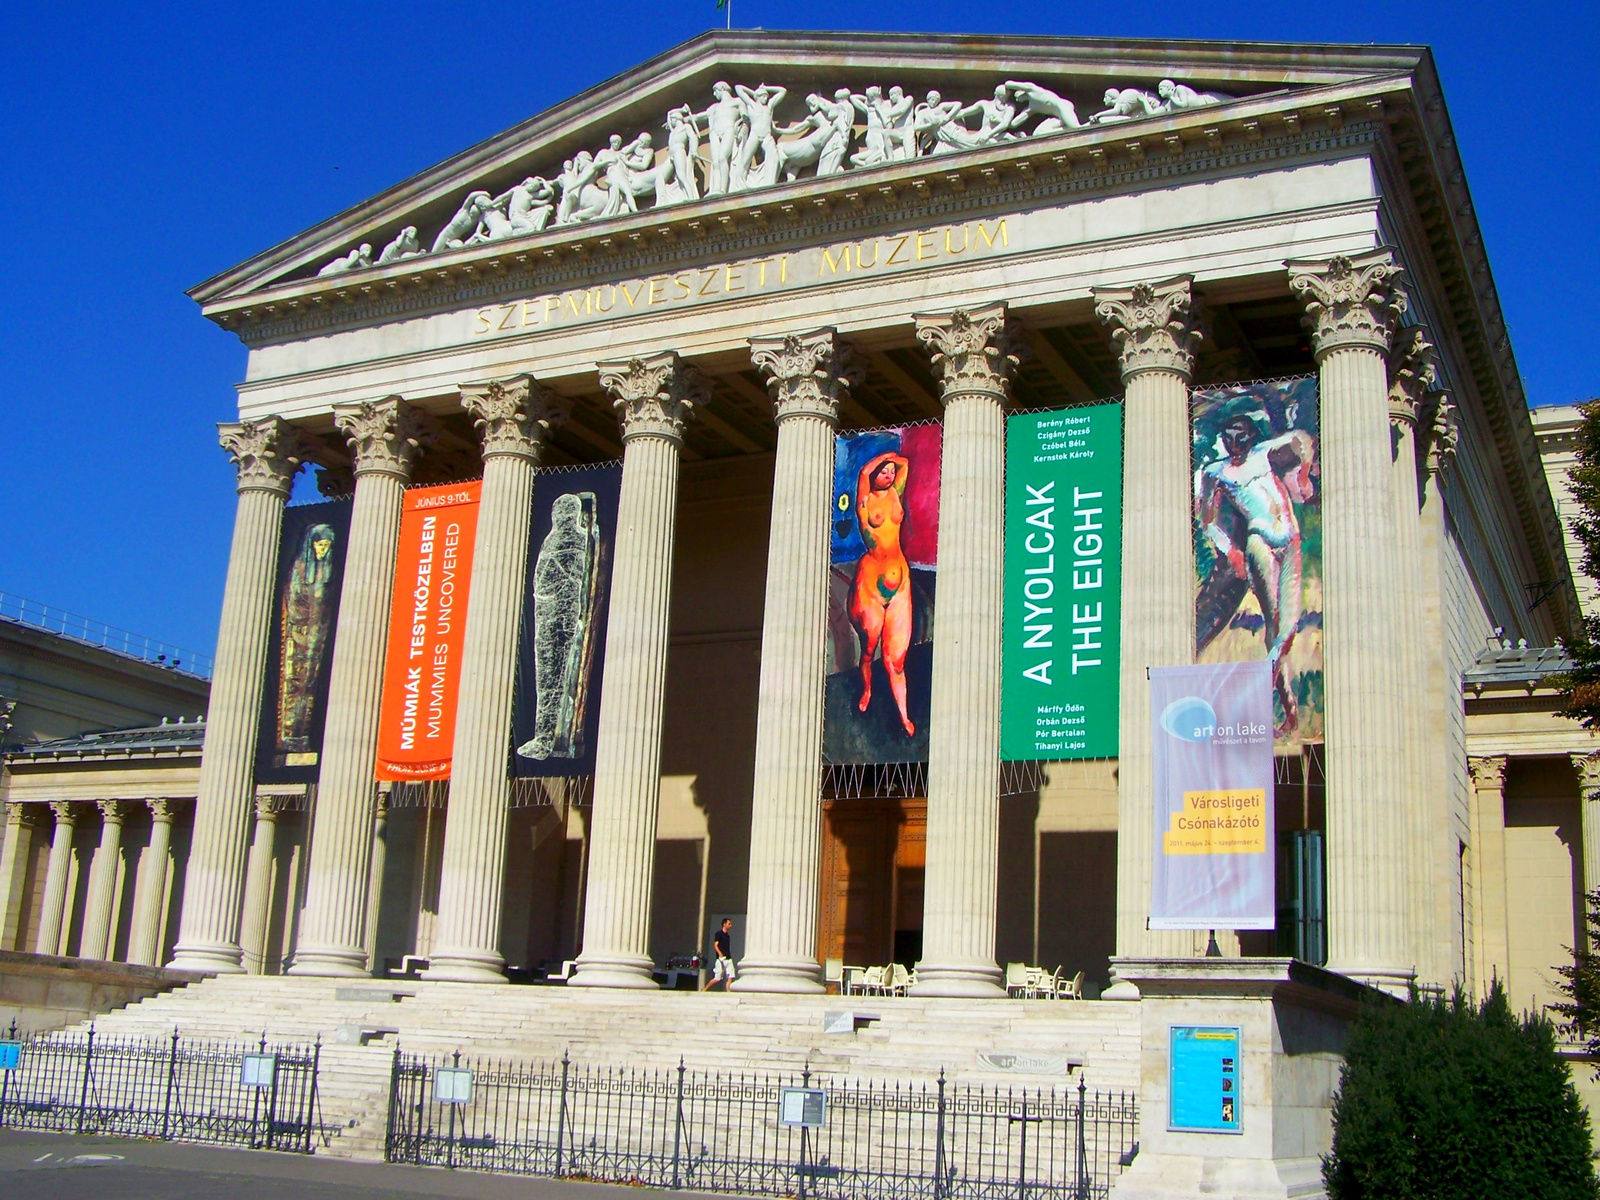 Szépművészeti Múzeum